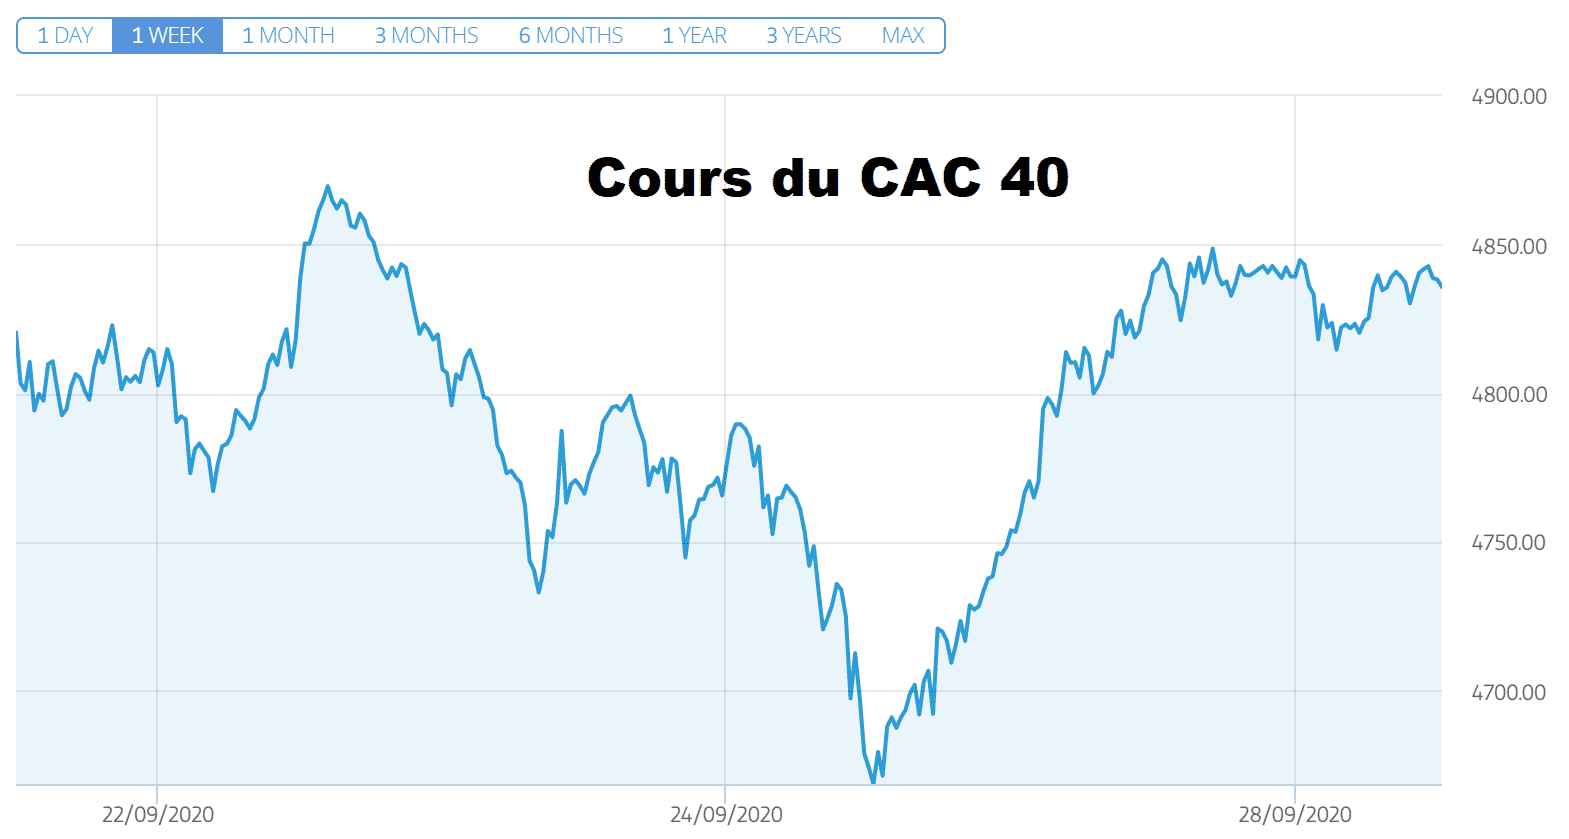 Cours du CAC 40 22 septembre 2020 covid-19 Raoult